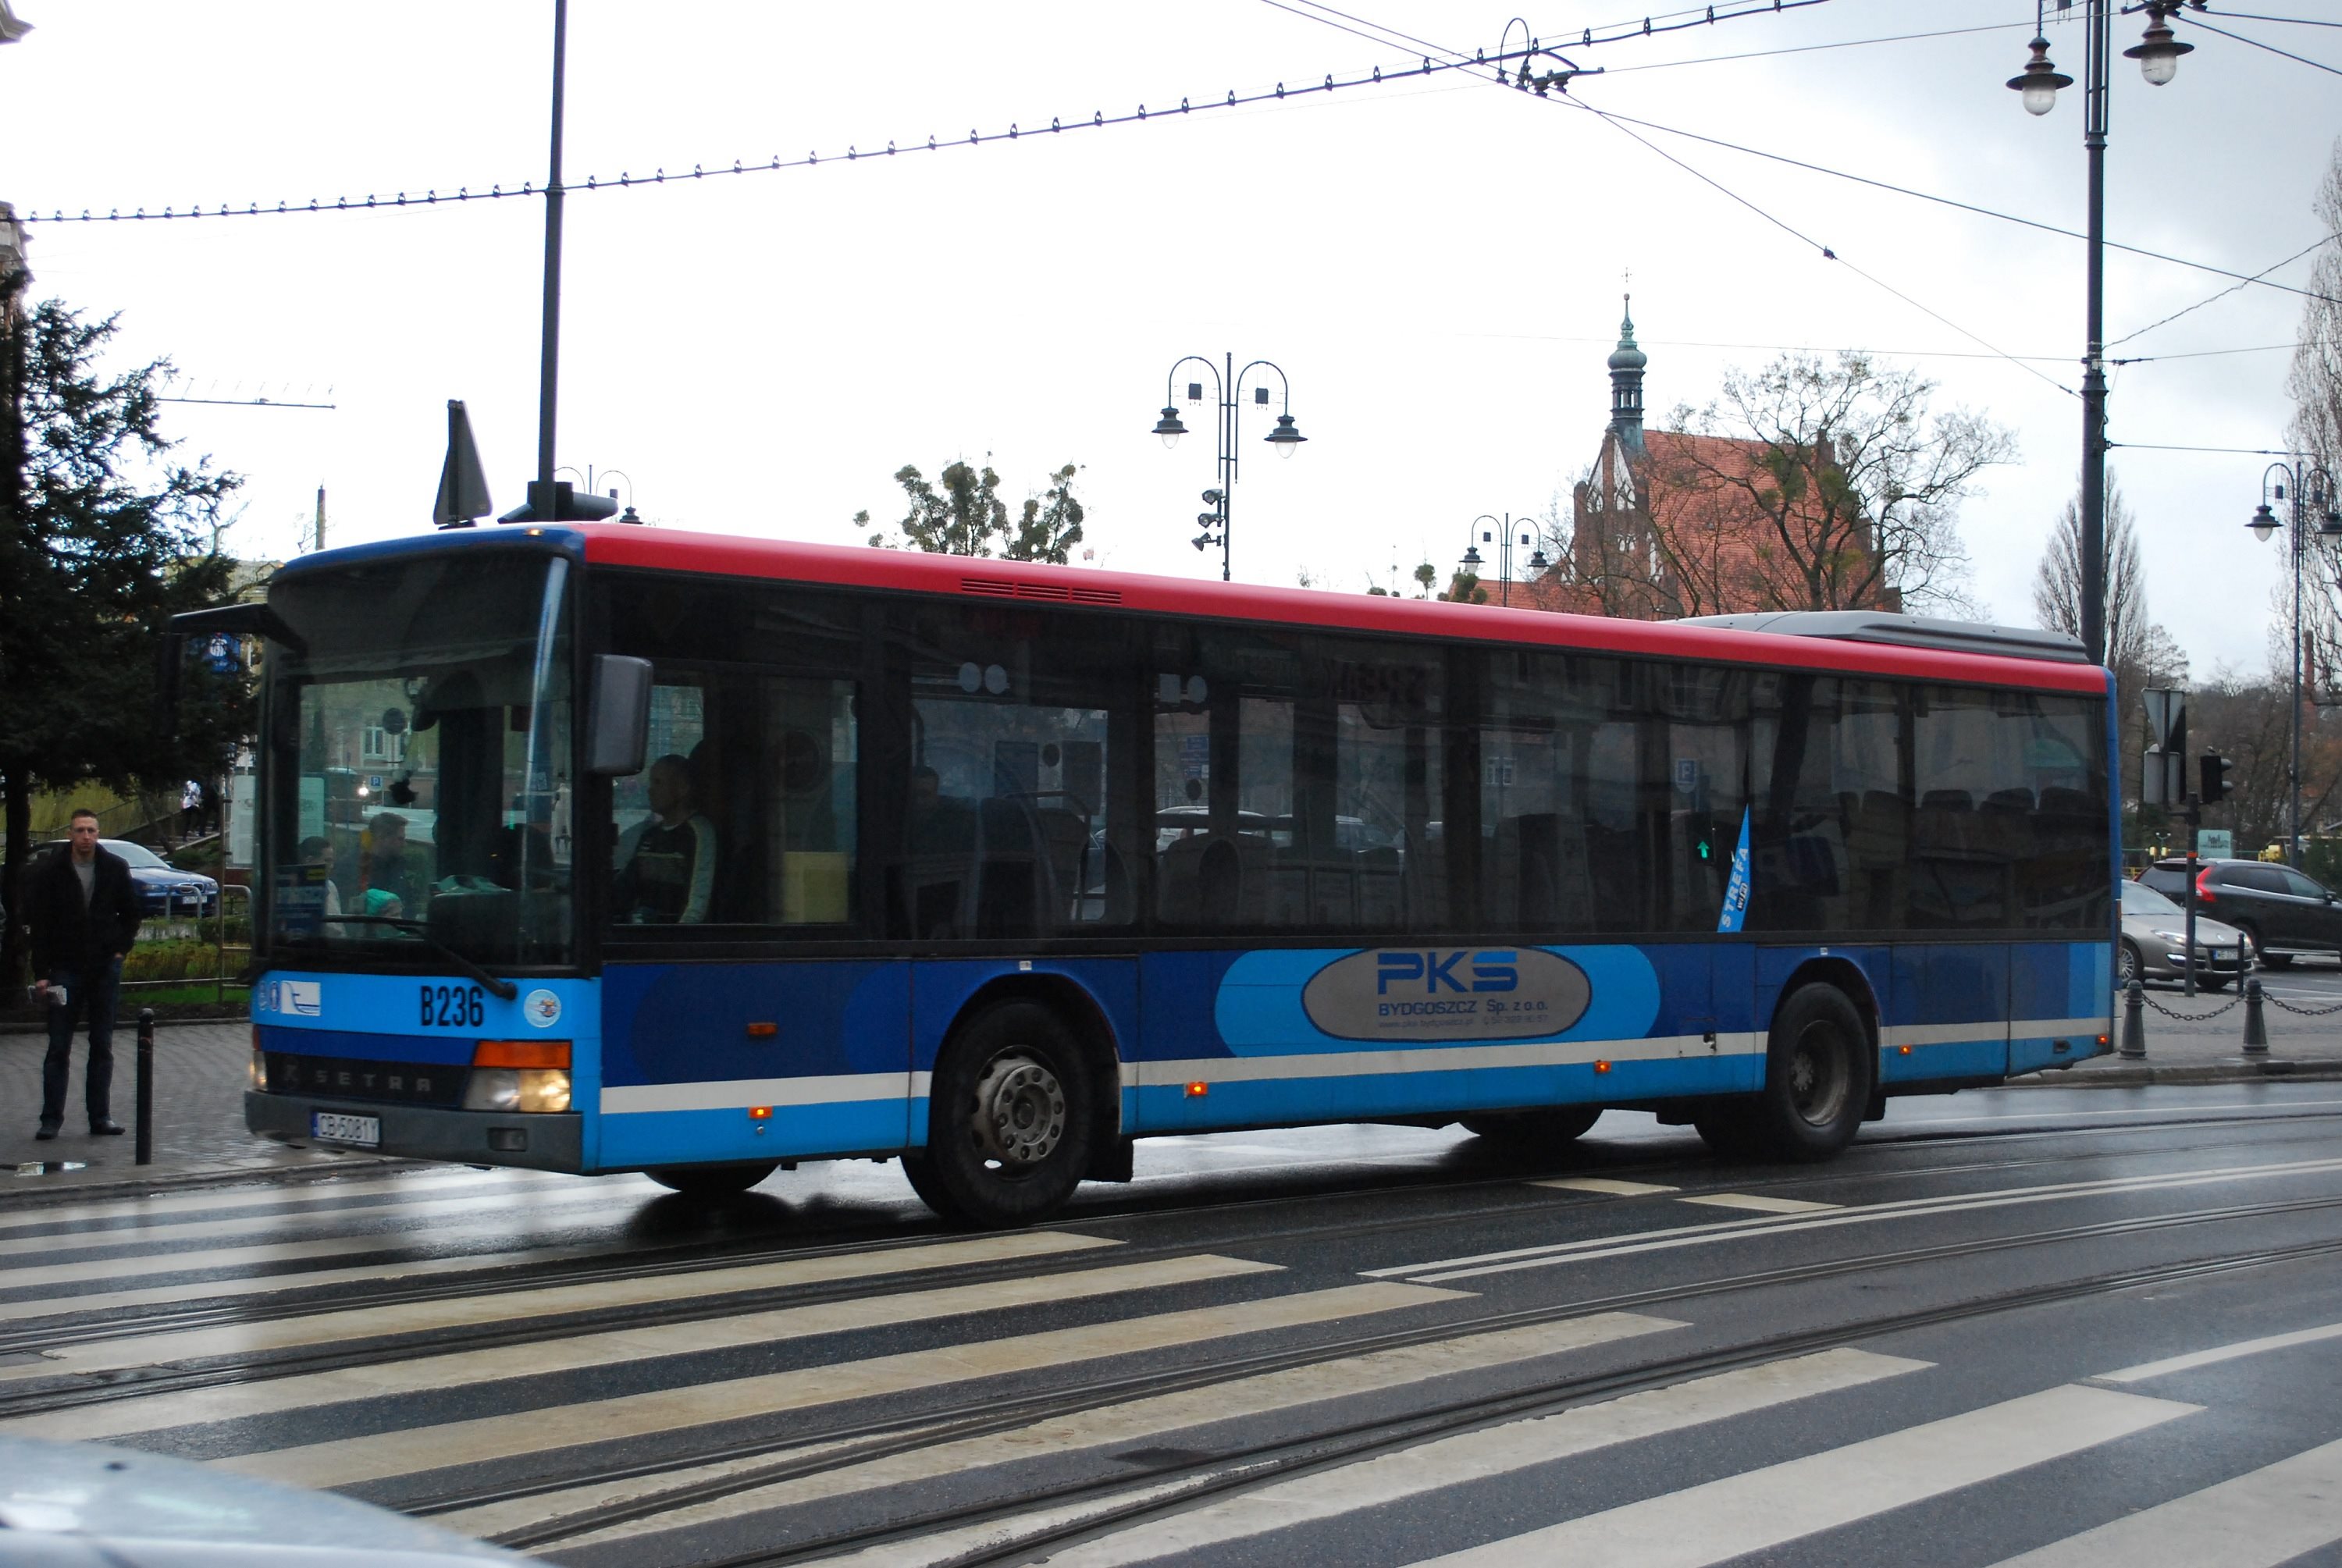 PKS (Busverkehr)  Bydgoszcz